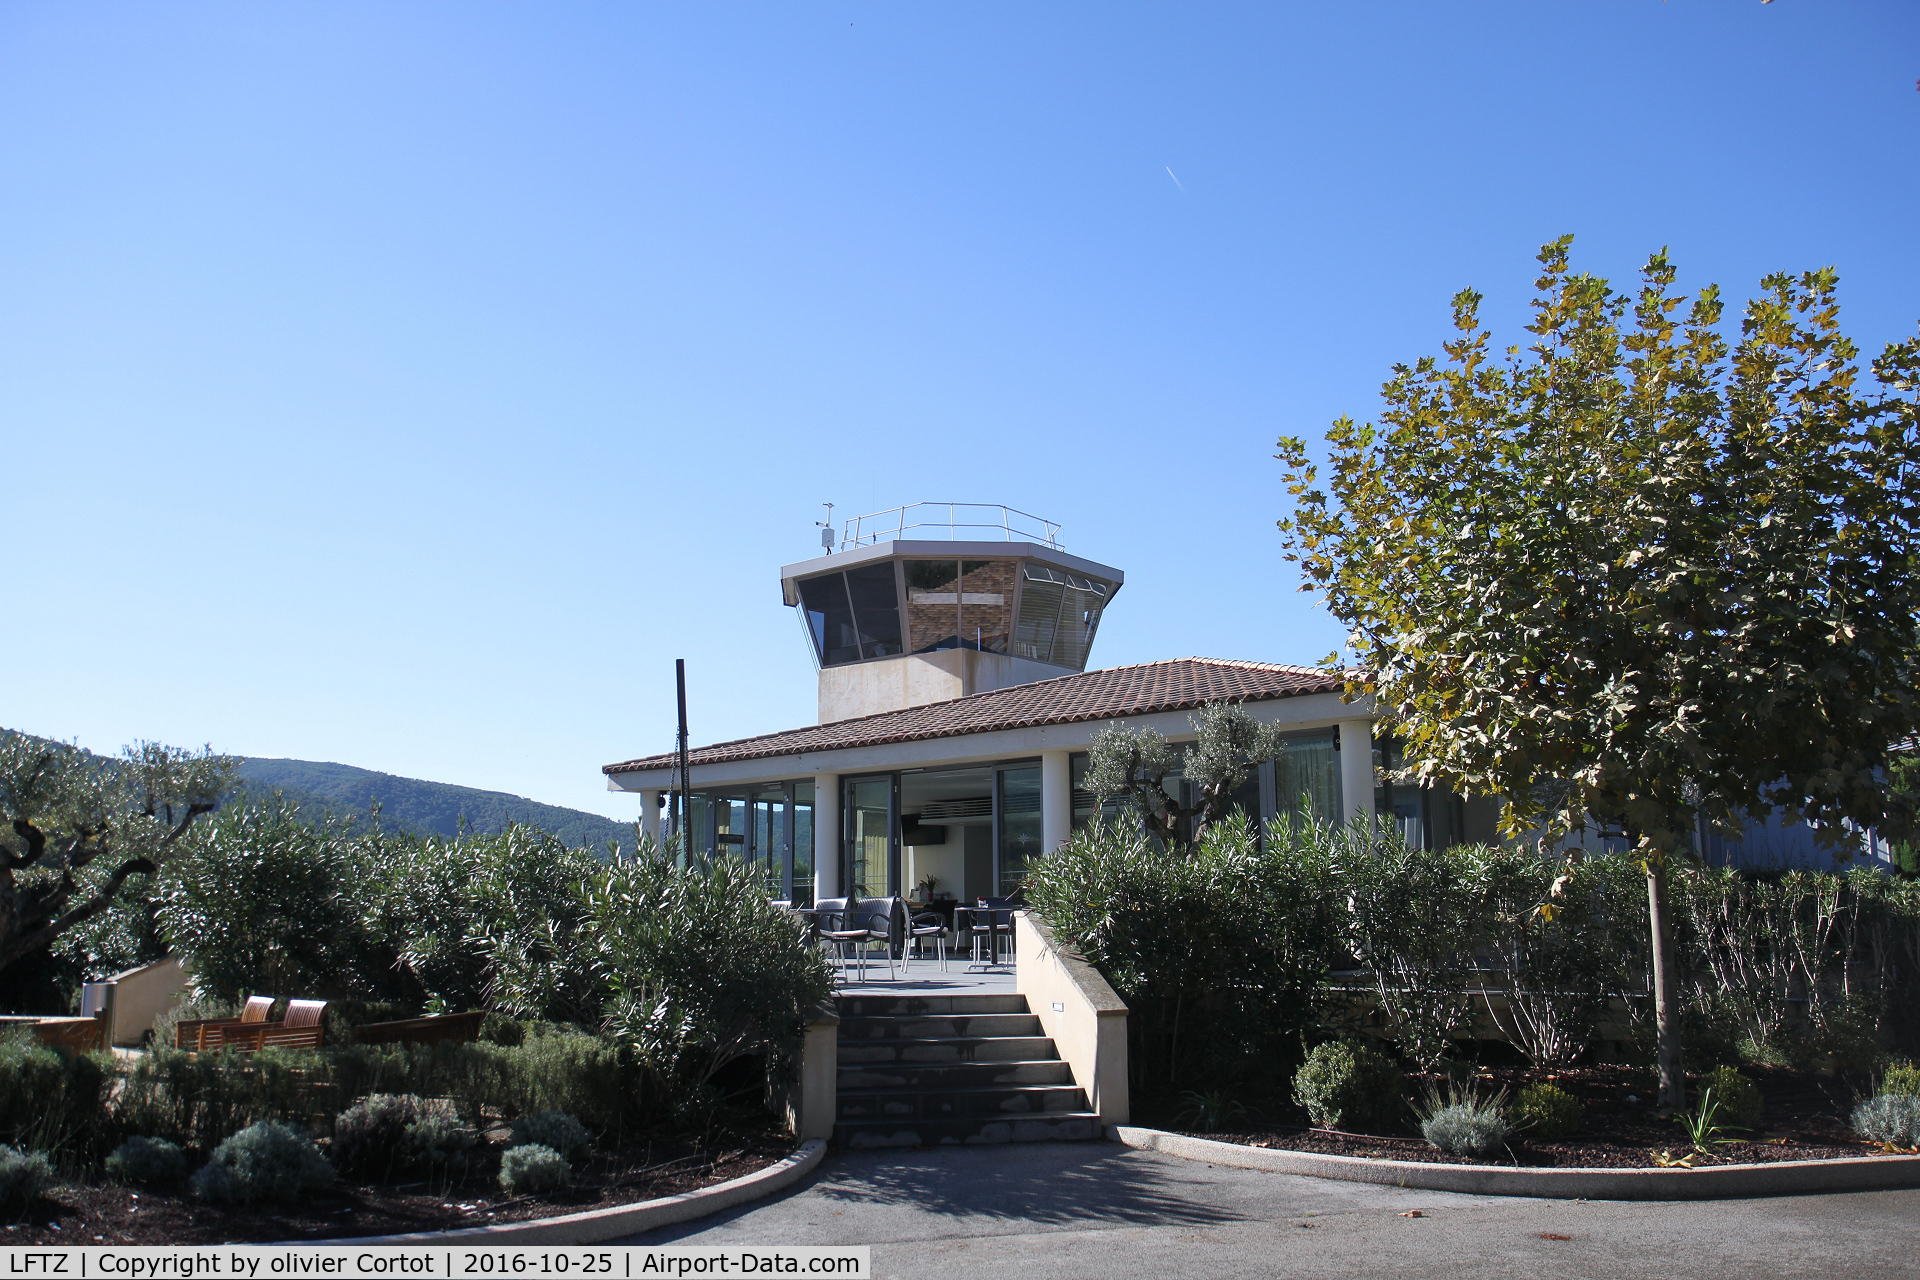 La Mole Airport, La Mole France (LFTZ) - small control tower for a small airport